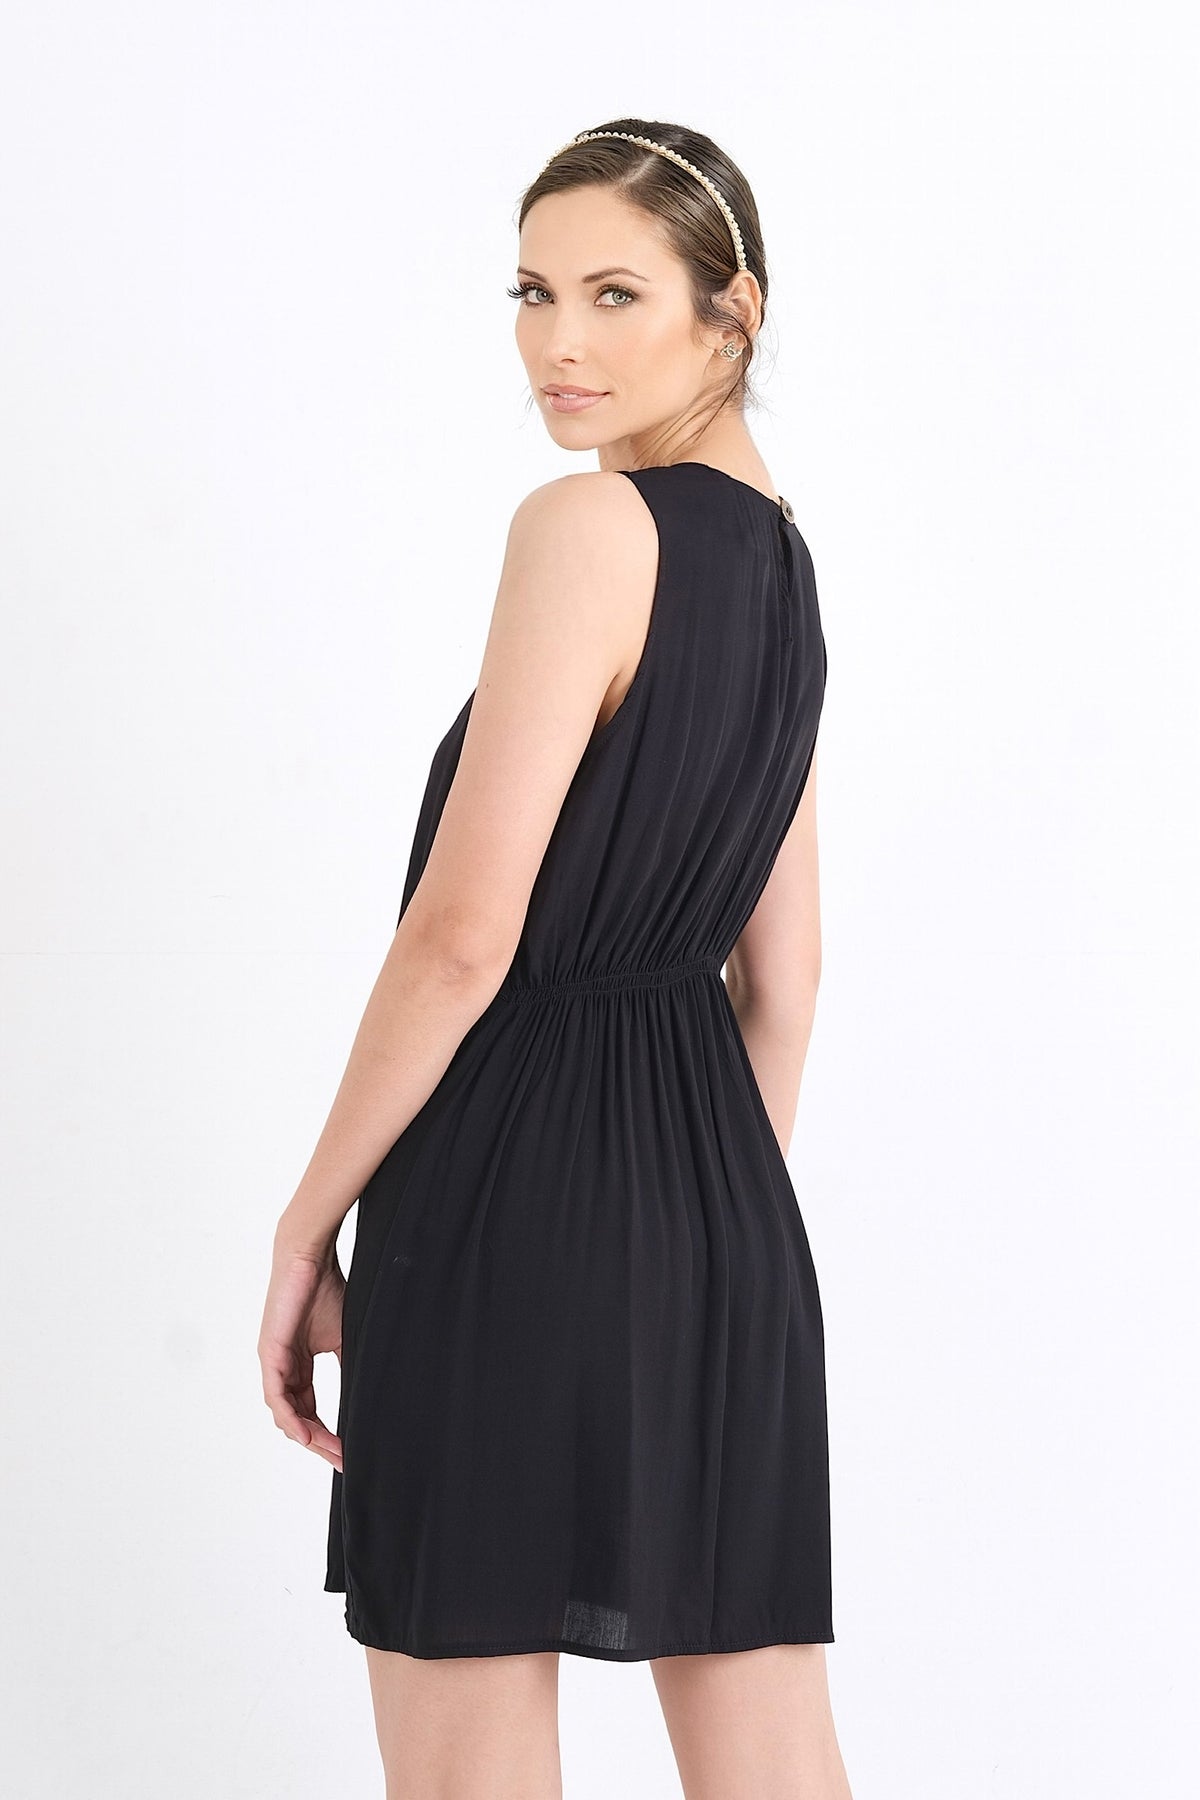 Découvrez cette robe légère et chic pour femme, disponible exclusivement en ligne au Québec. Tailles XS-XXL disponibles pour une élégance estivale quotidienne.